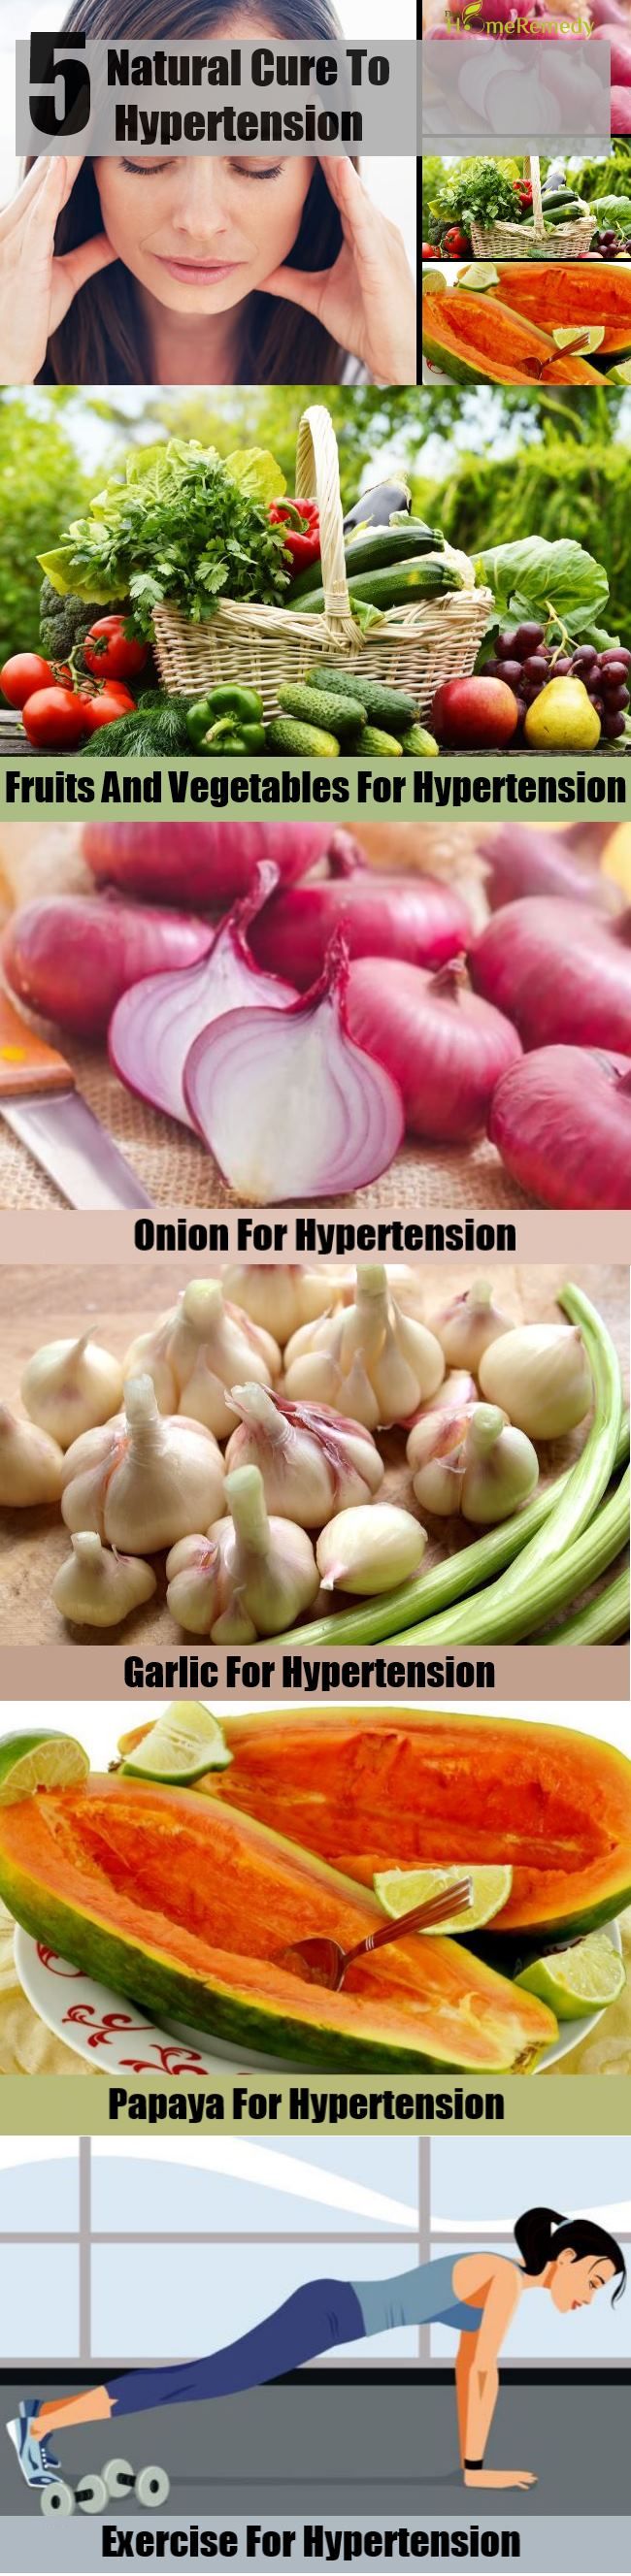 5 remède naturel pour l'hypertension